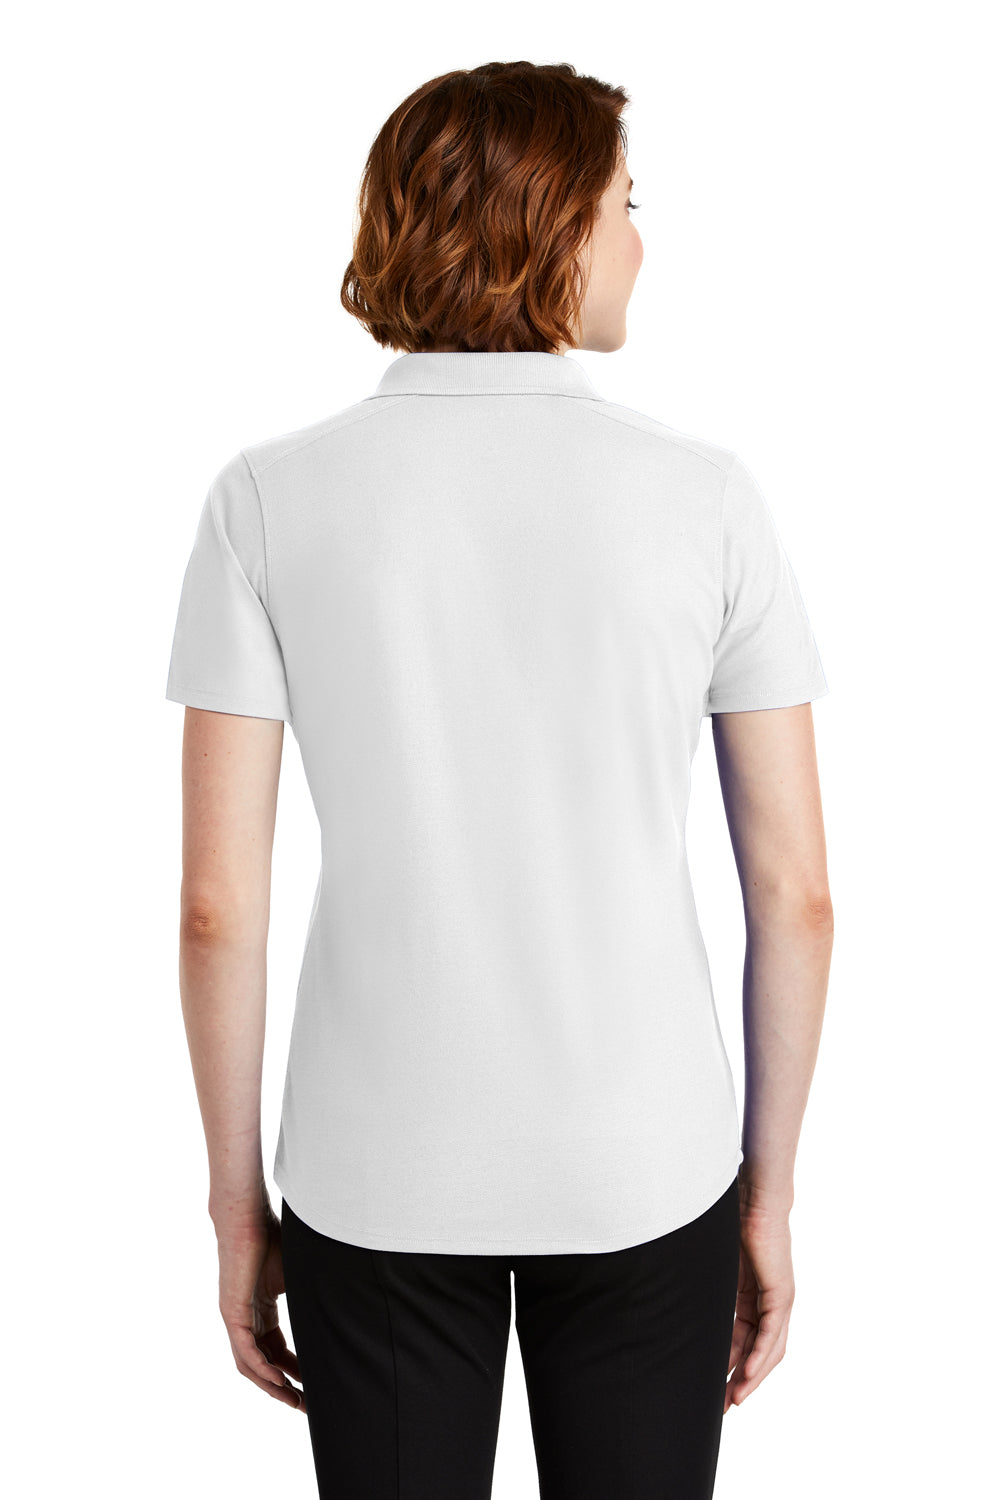 Port Authority LK600 Womens EZPerformance Moisture Wicking Short Sleeve Polo Shirt White Back